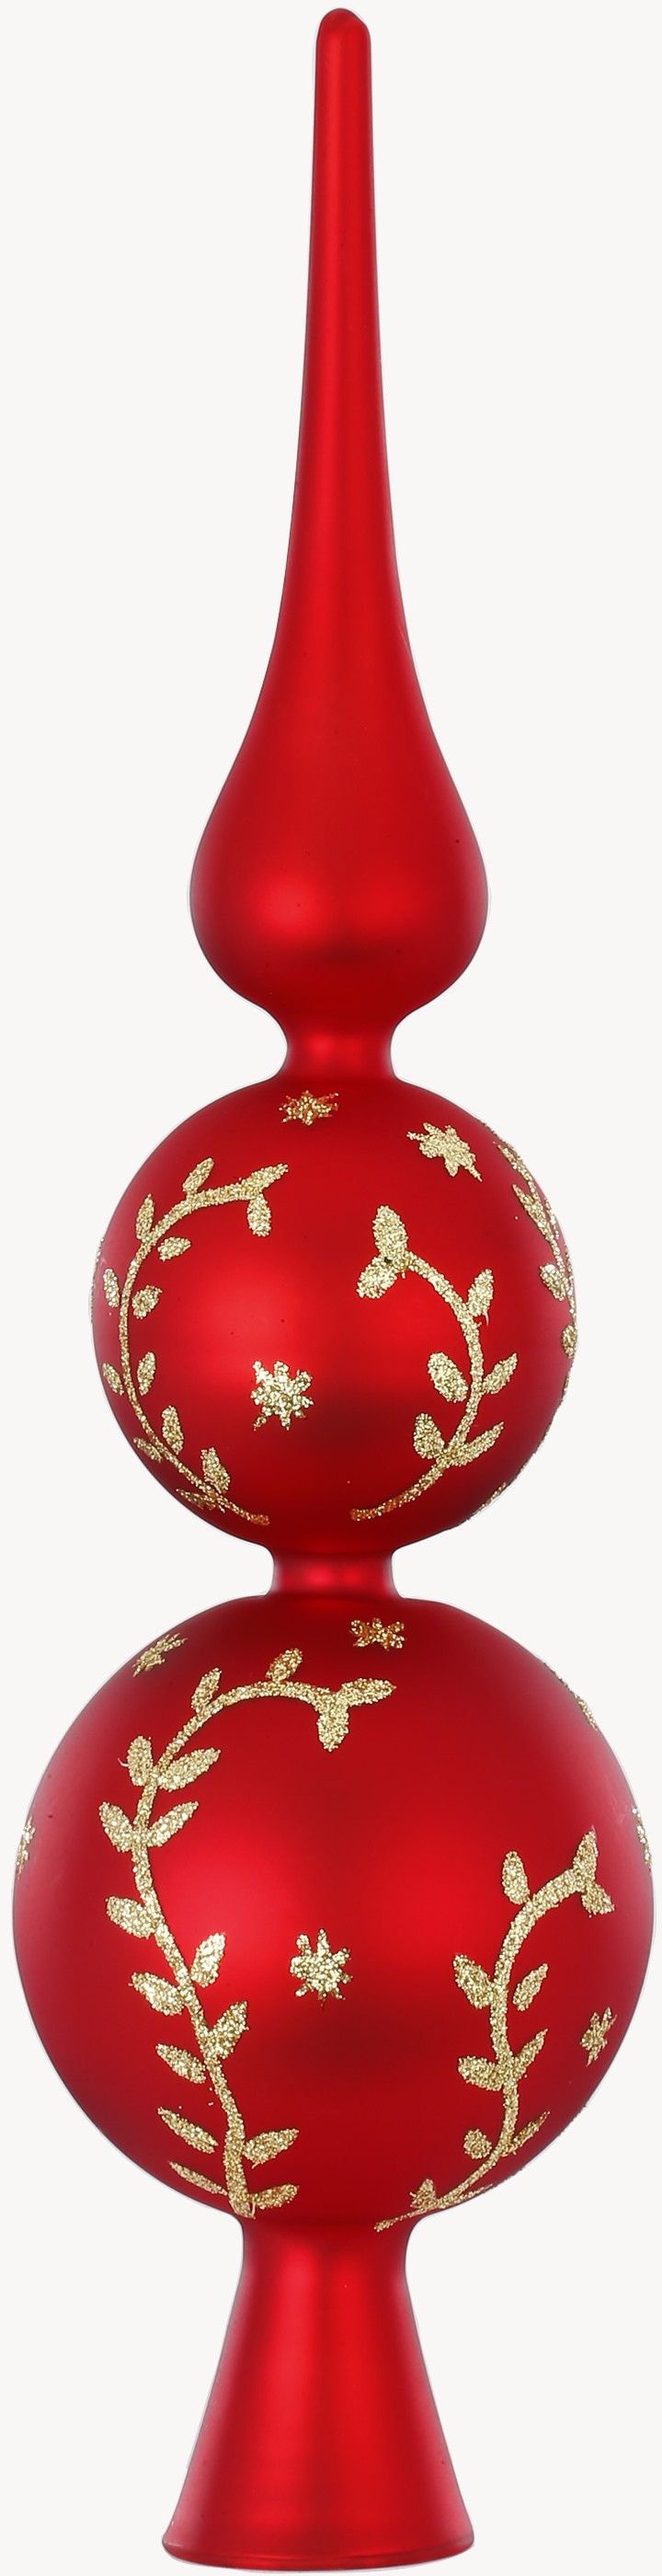 MAGIC by Inge Christbaumspitze »Merry Red, Weihnachtsdeko rot, Christbaumschmuck«, (1 tlg.), hochwertiger Echtglas-Weihnachtsschmuck, Höhe ca. 31 cm